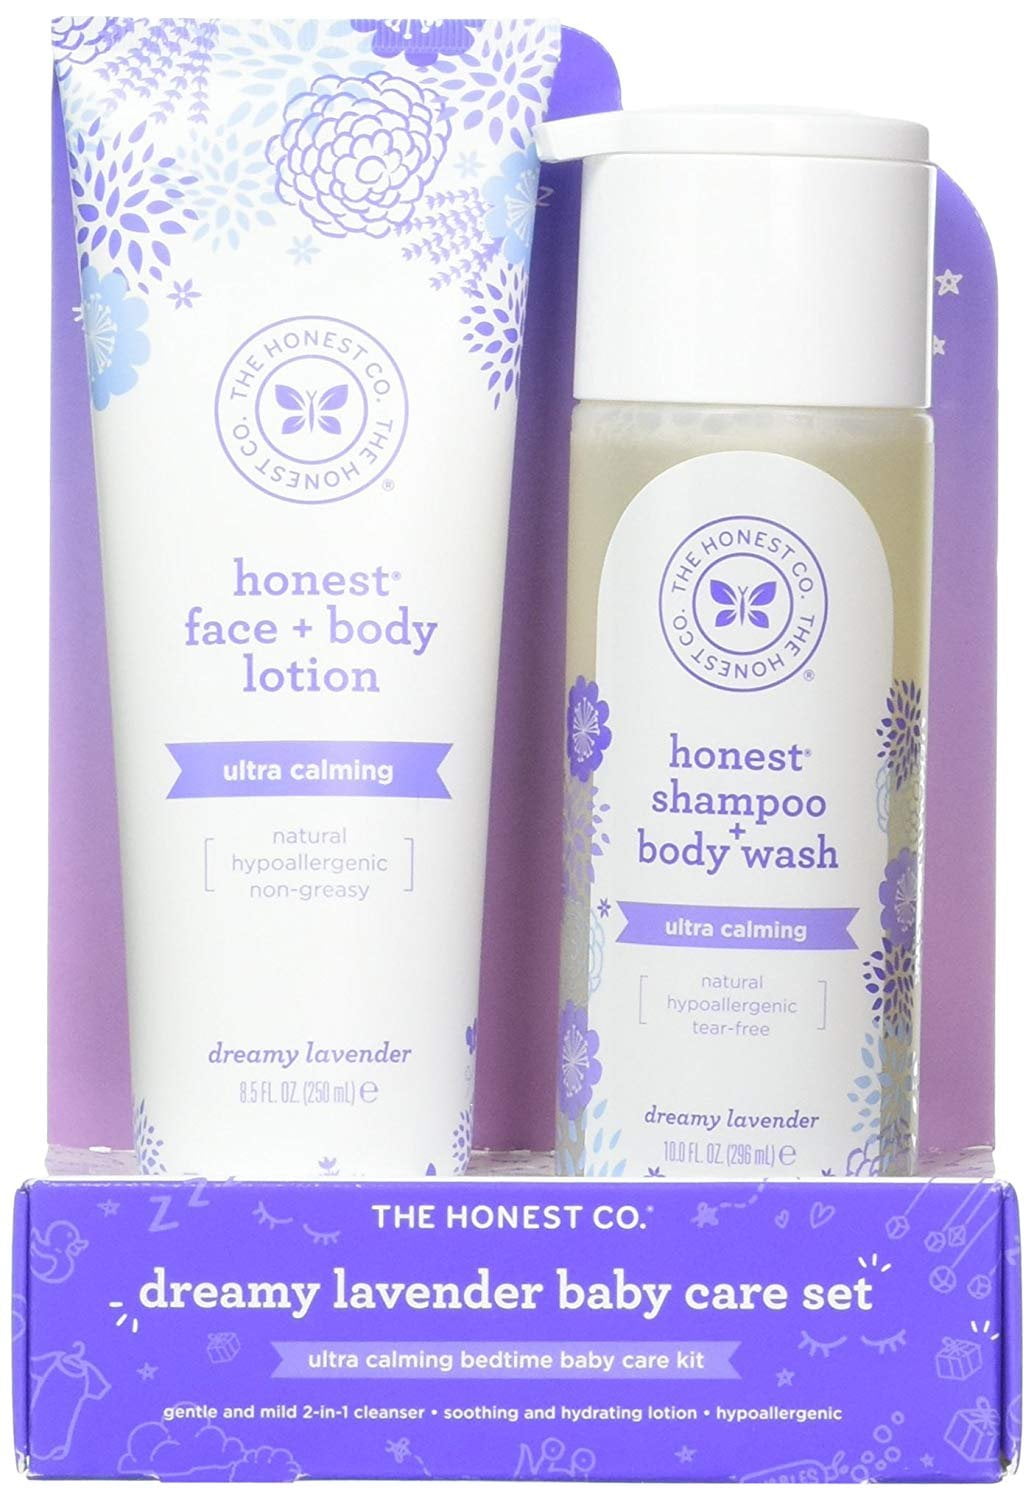 honest company body lotion